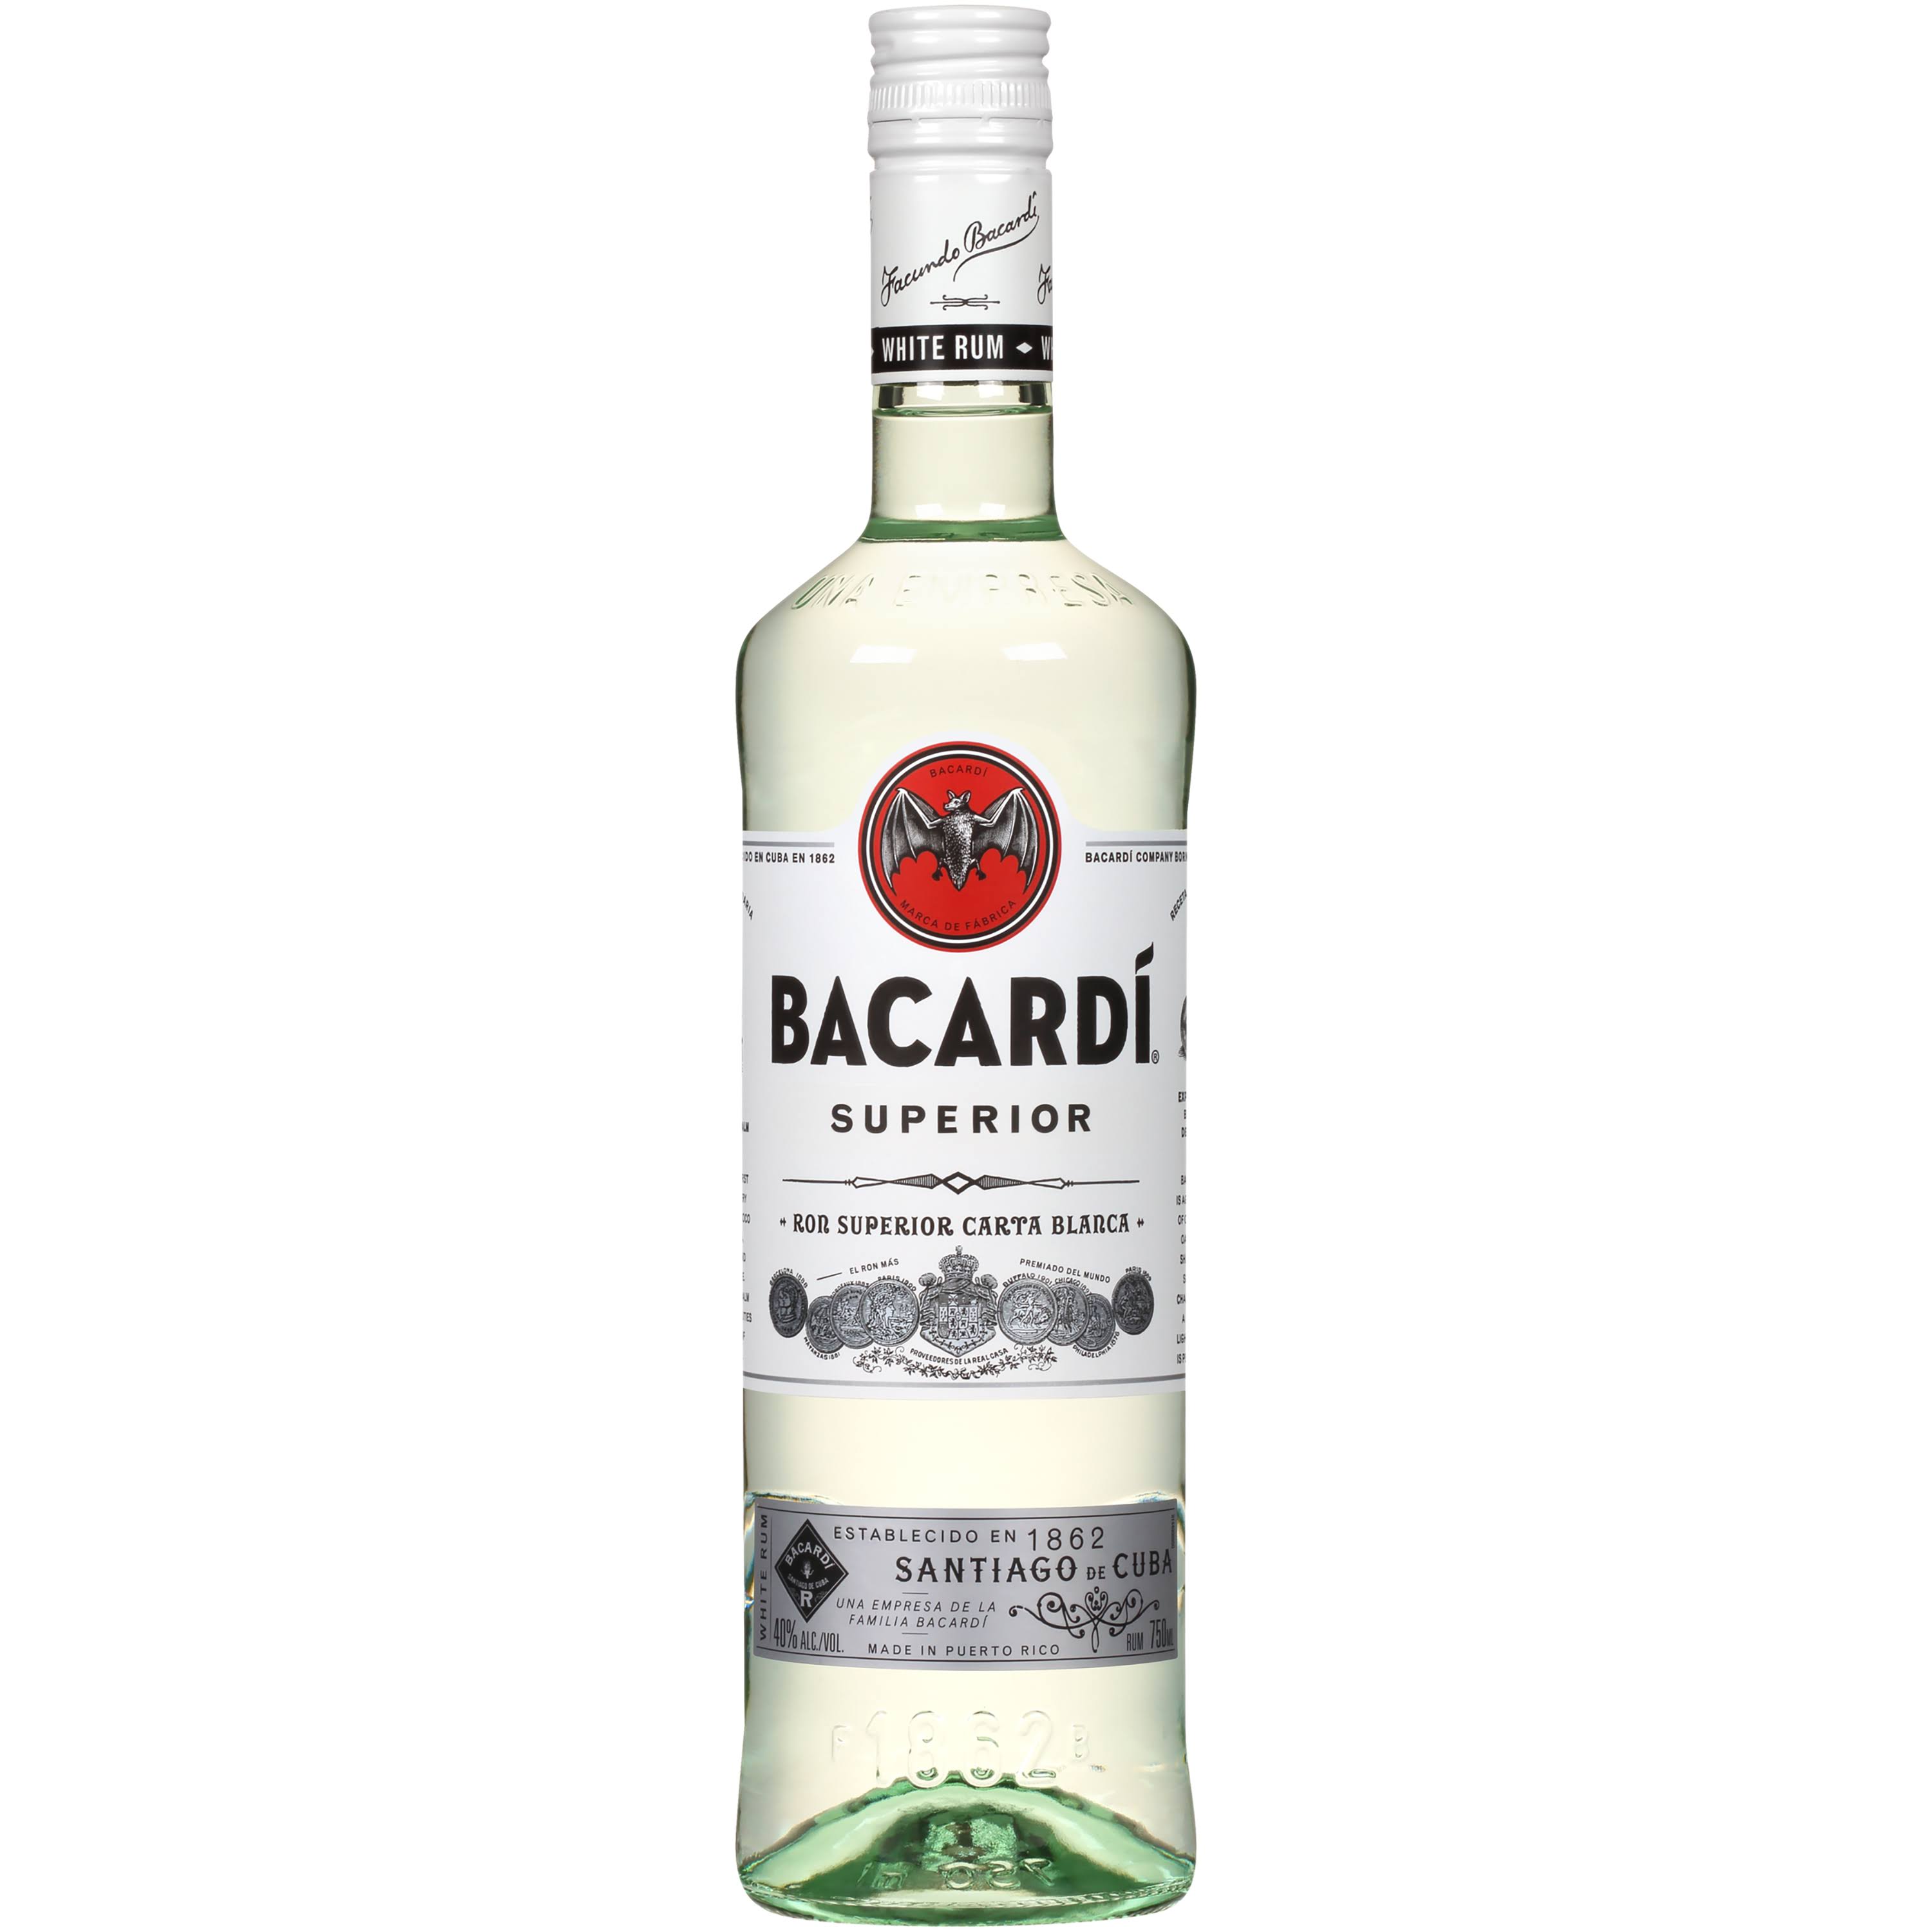 Bacardi Superior Original Premium Rum - 750 ml (40% alc by vol)